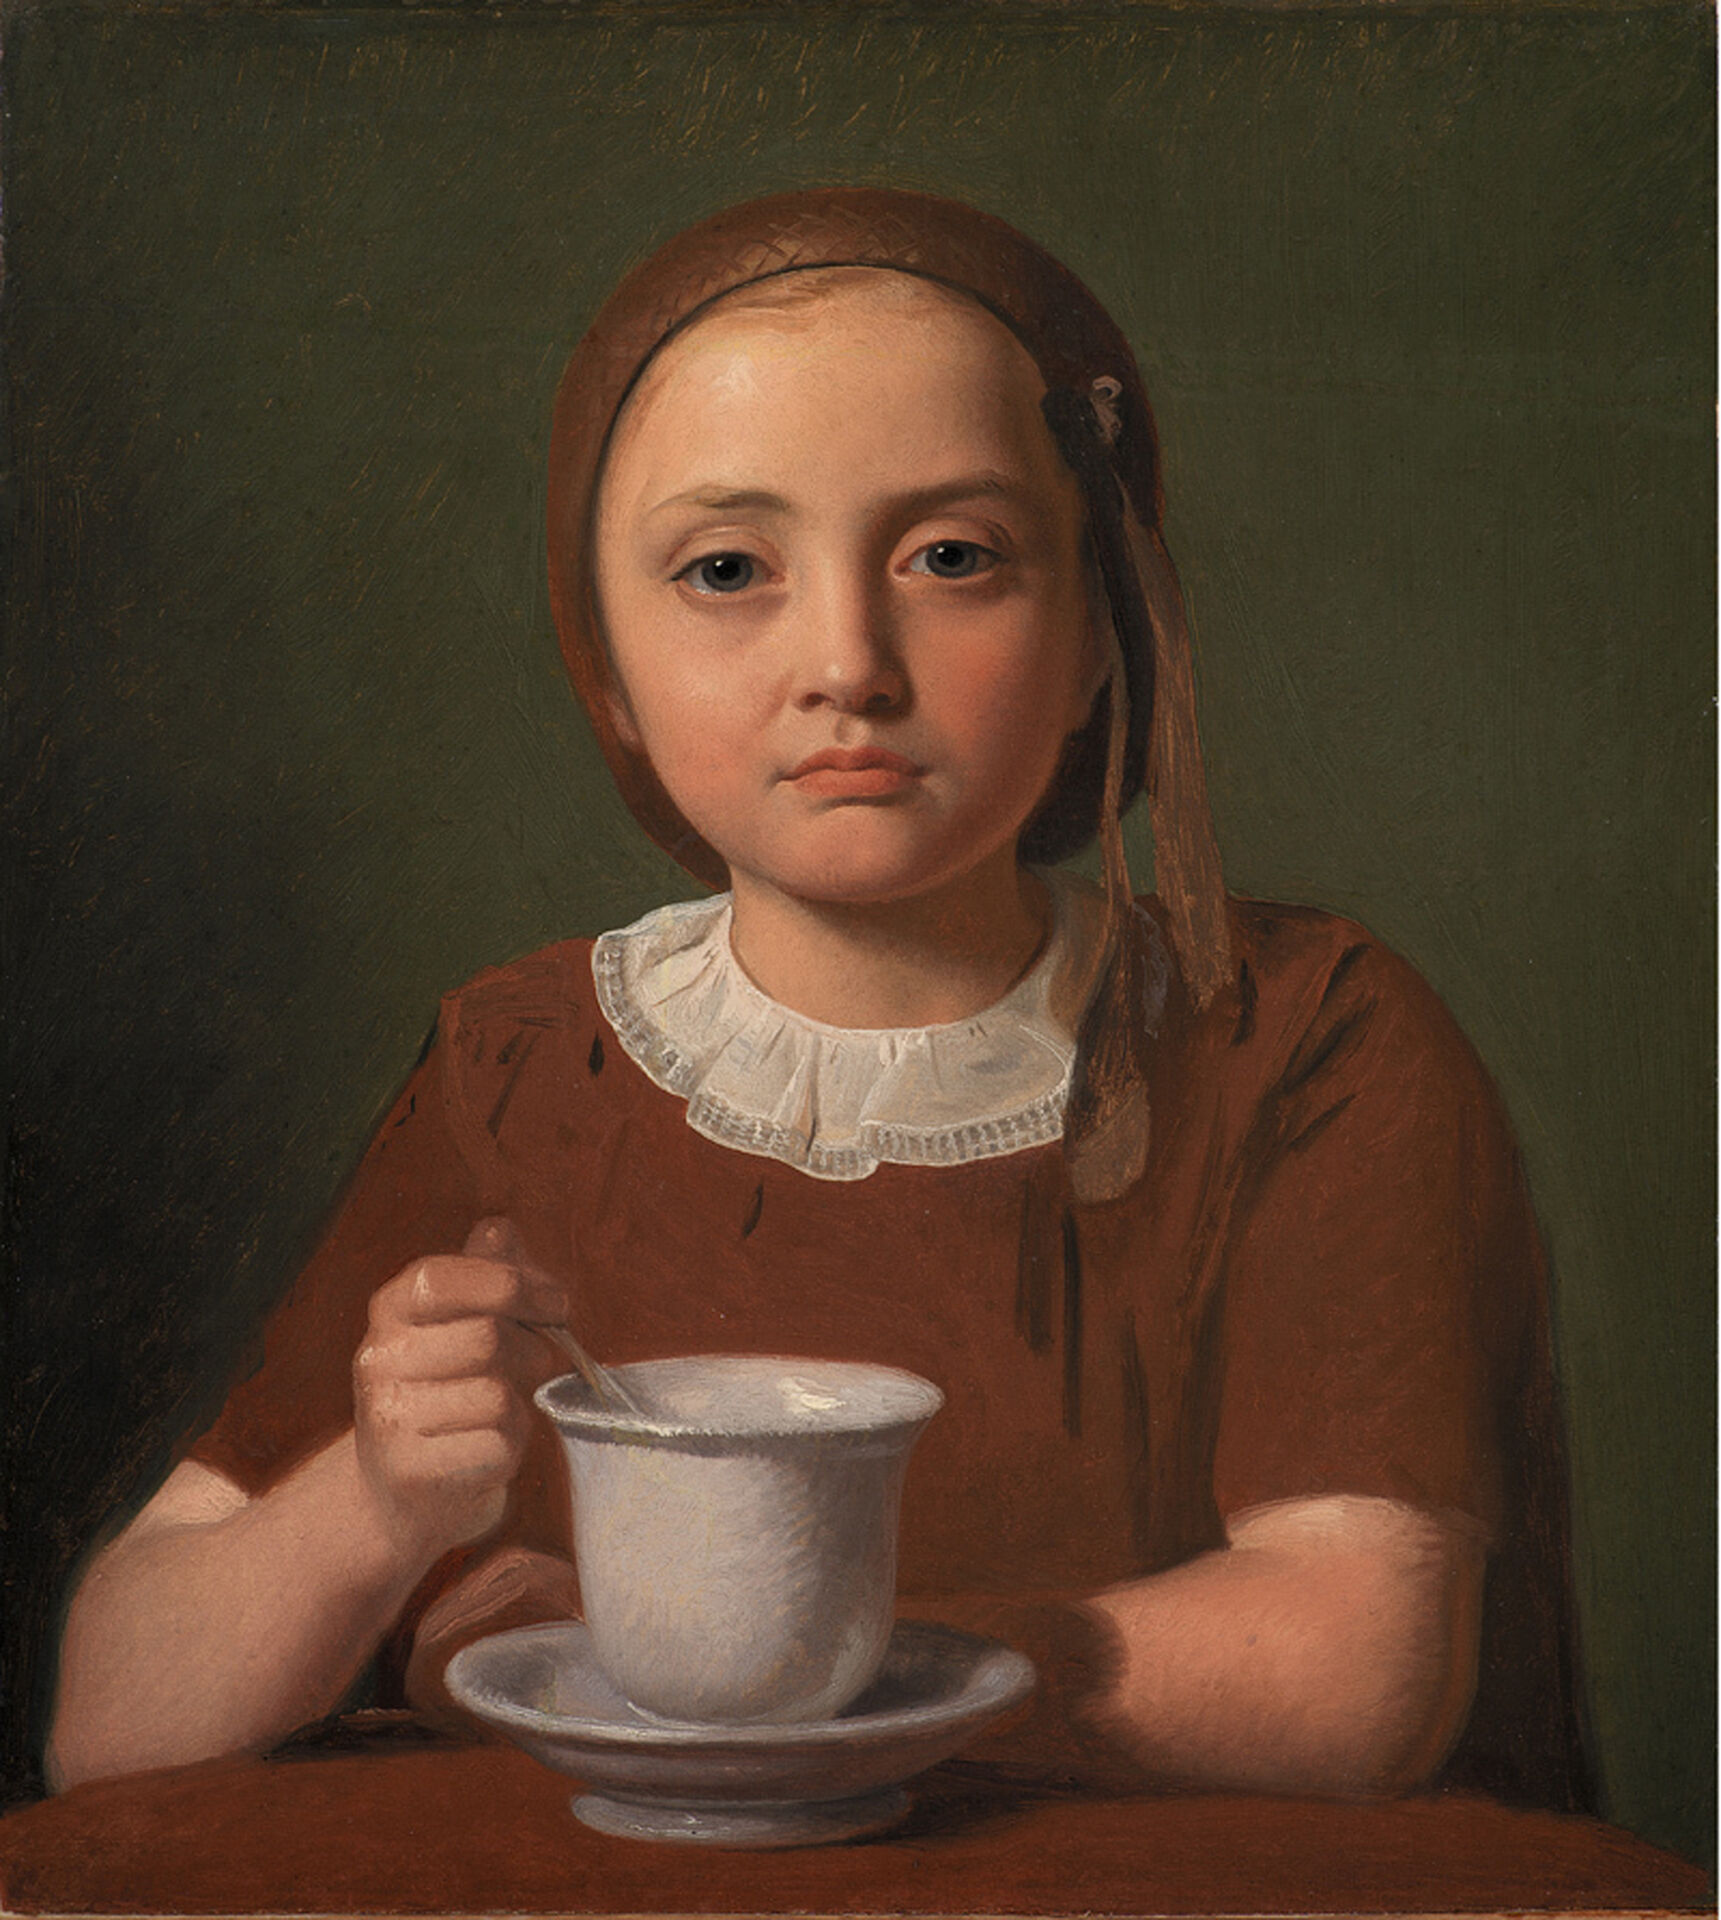 Constantin Hansen, En lille pige, Elise Købke, med en kop foran sig, 1850. Olja på papper uppklistrat på duk. Statens Museum for Kunst.